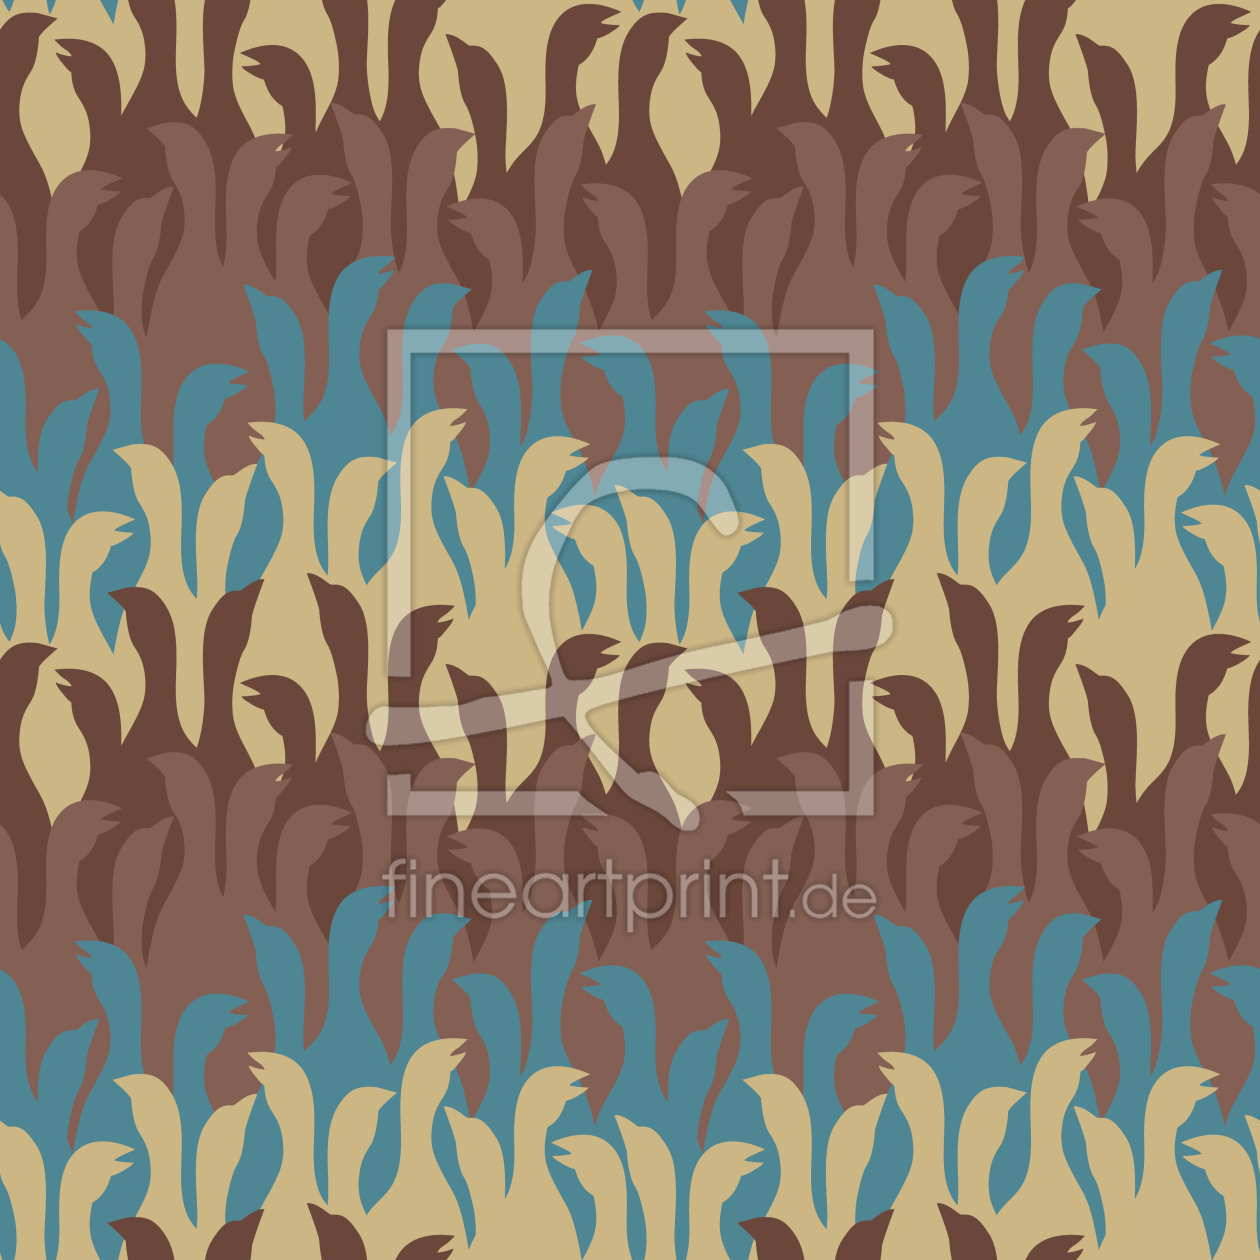 Bild-Nr.: 9014120 Redende Gänse erstellt von patterndesigns-com